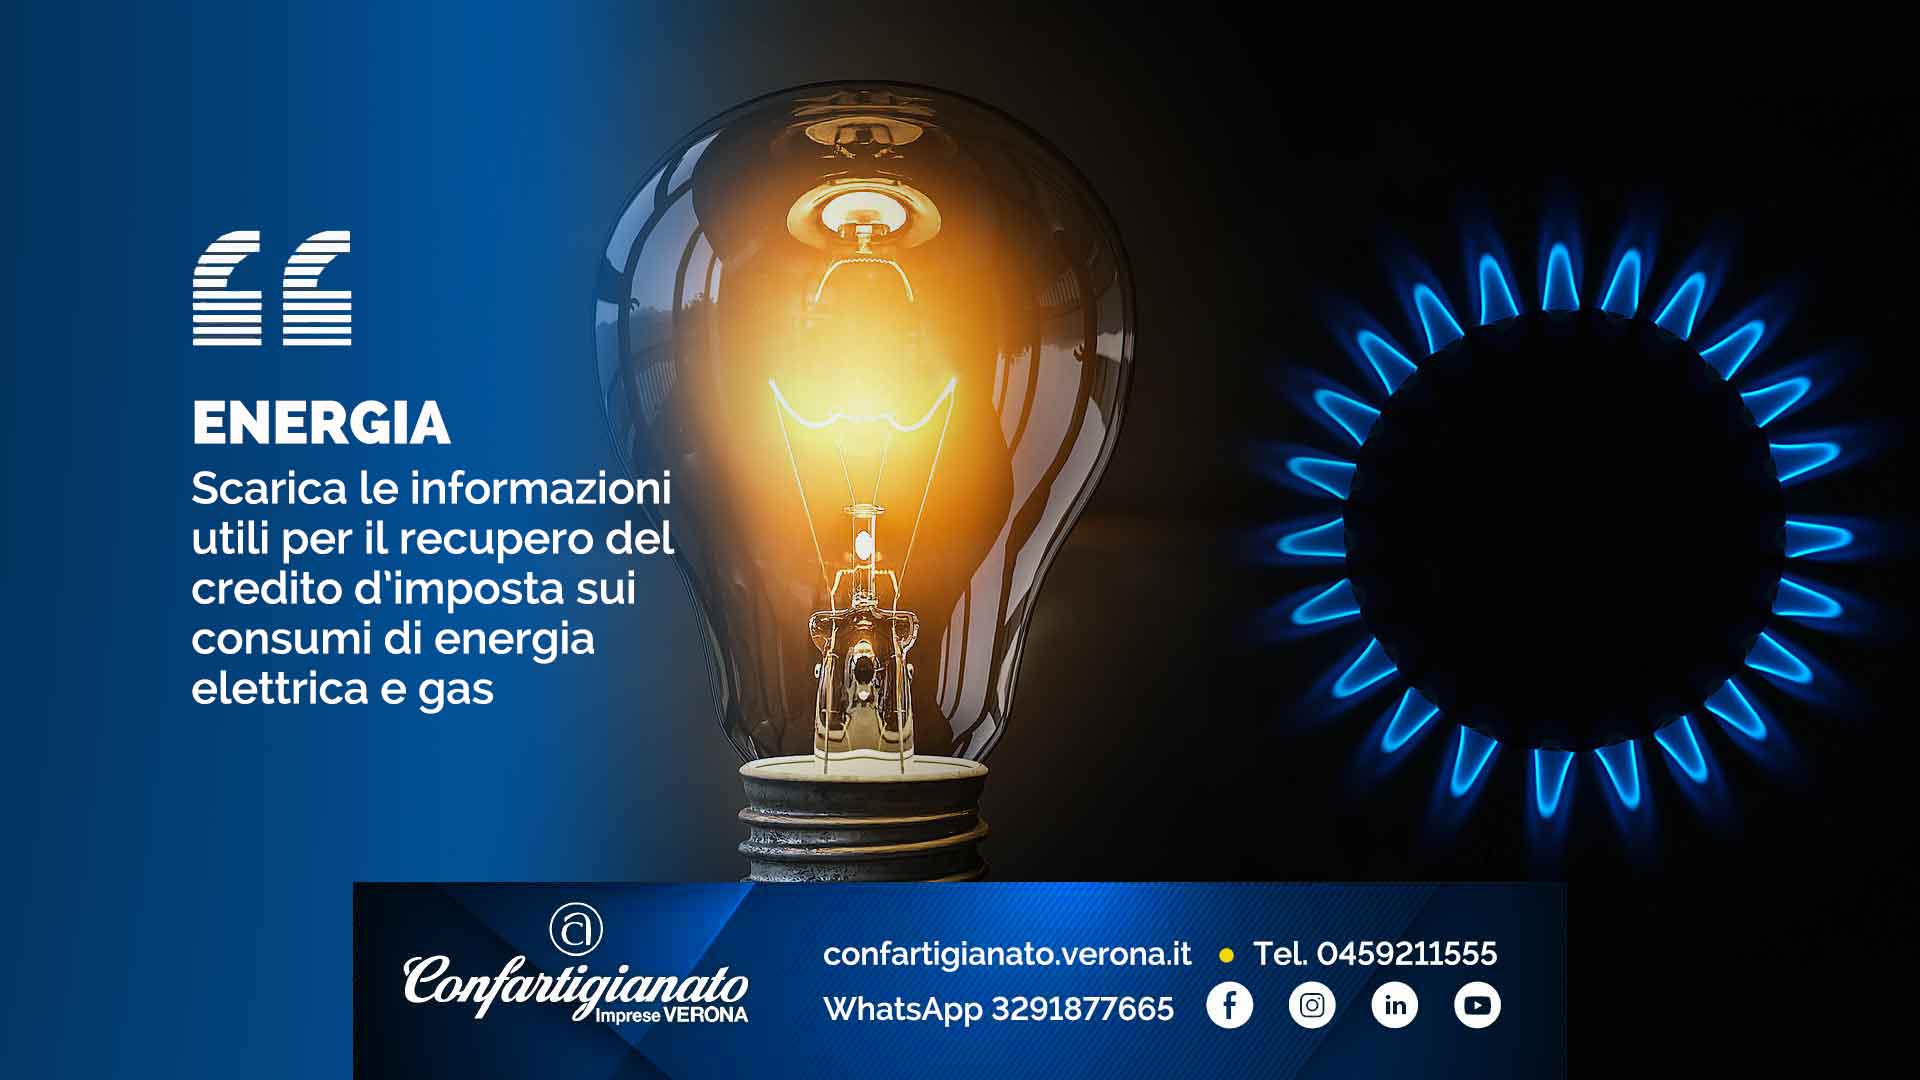 ENERGIA – Scarica le informazioni utili per il recupero del credito d’imposta sui consumi di energia elettrica e gas